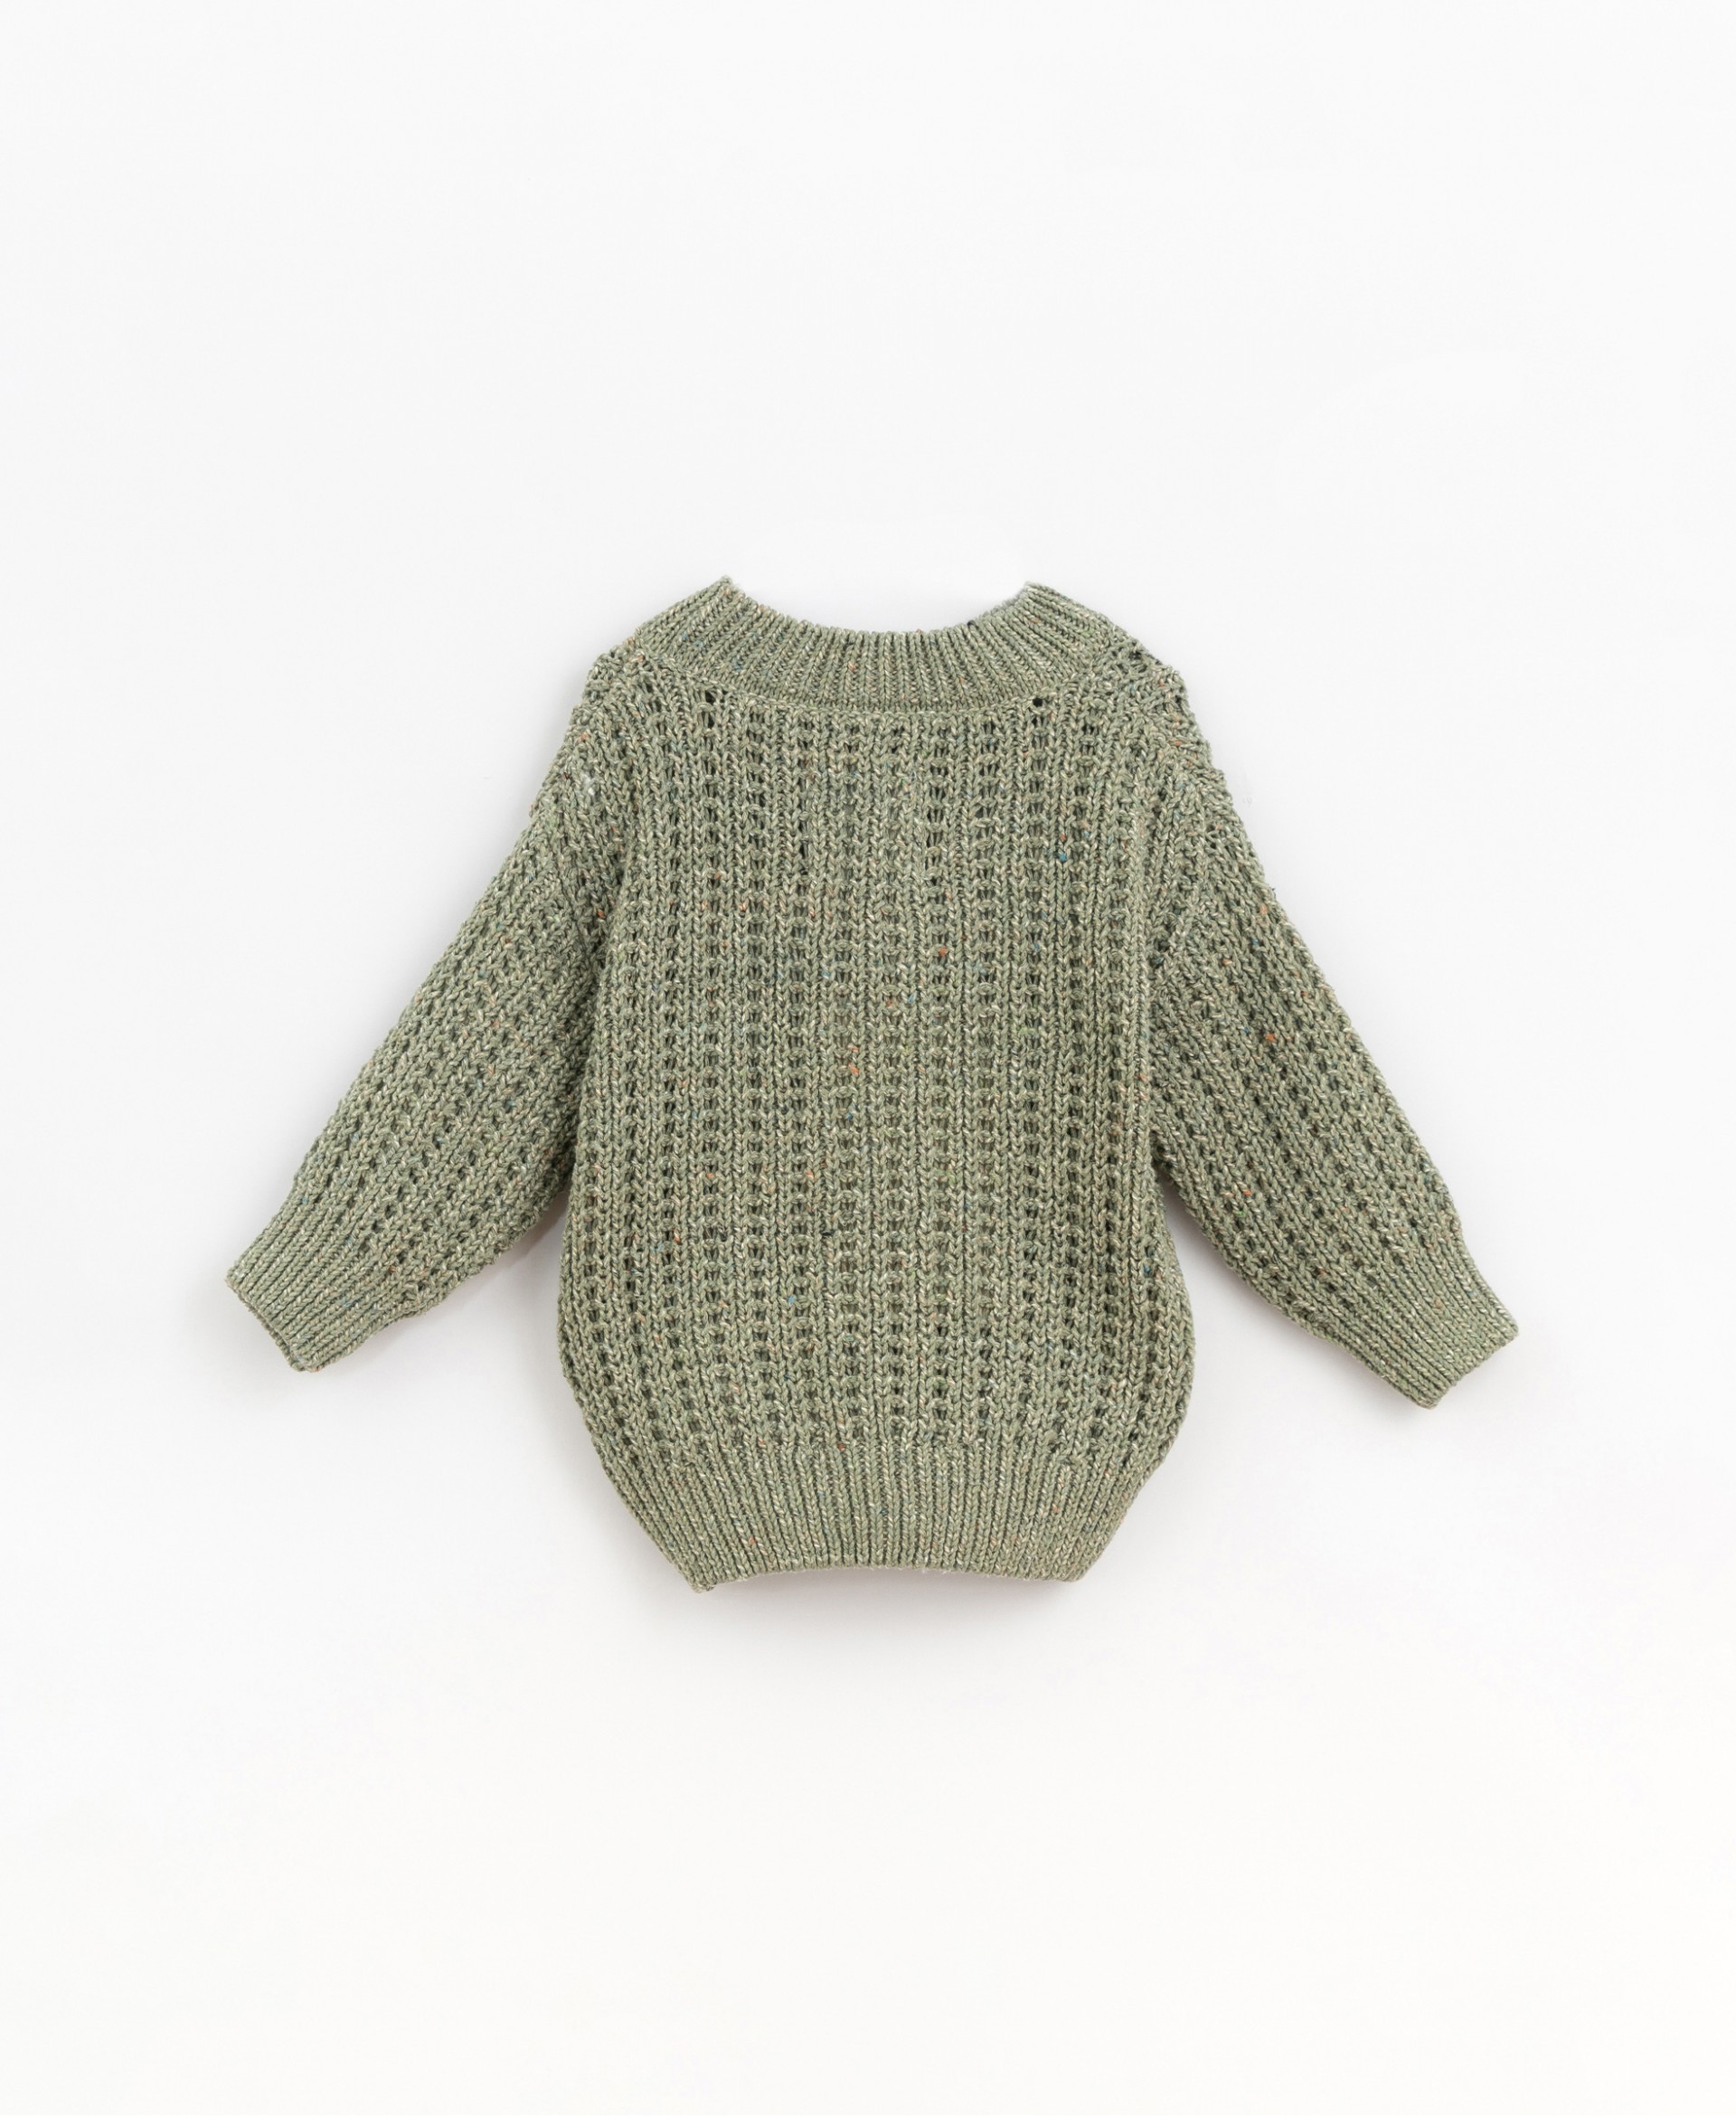 Jersey de tricot con fibras recicladas | Basketry 